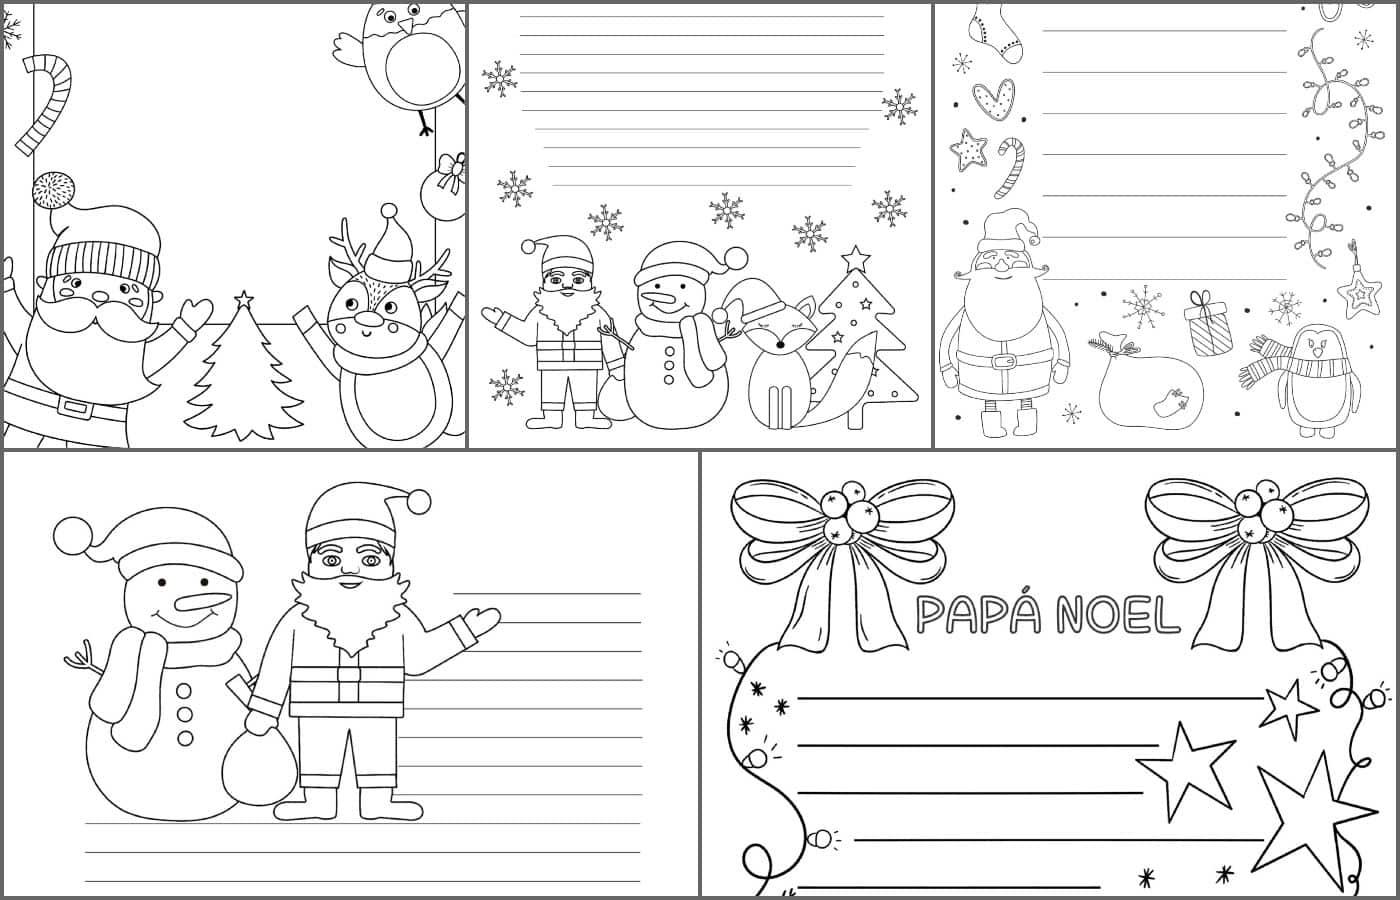 Carta Papa Noel Colorear 5 modelos de carta para Papá Noel para imprimir y colorear - Etapa Infantil